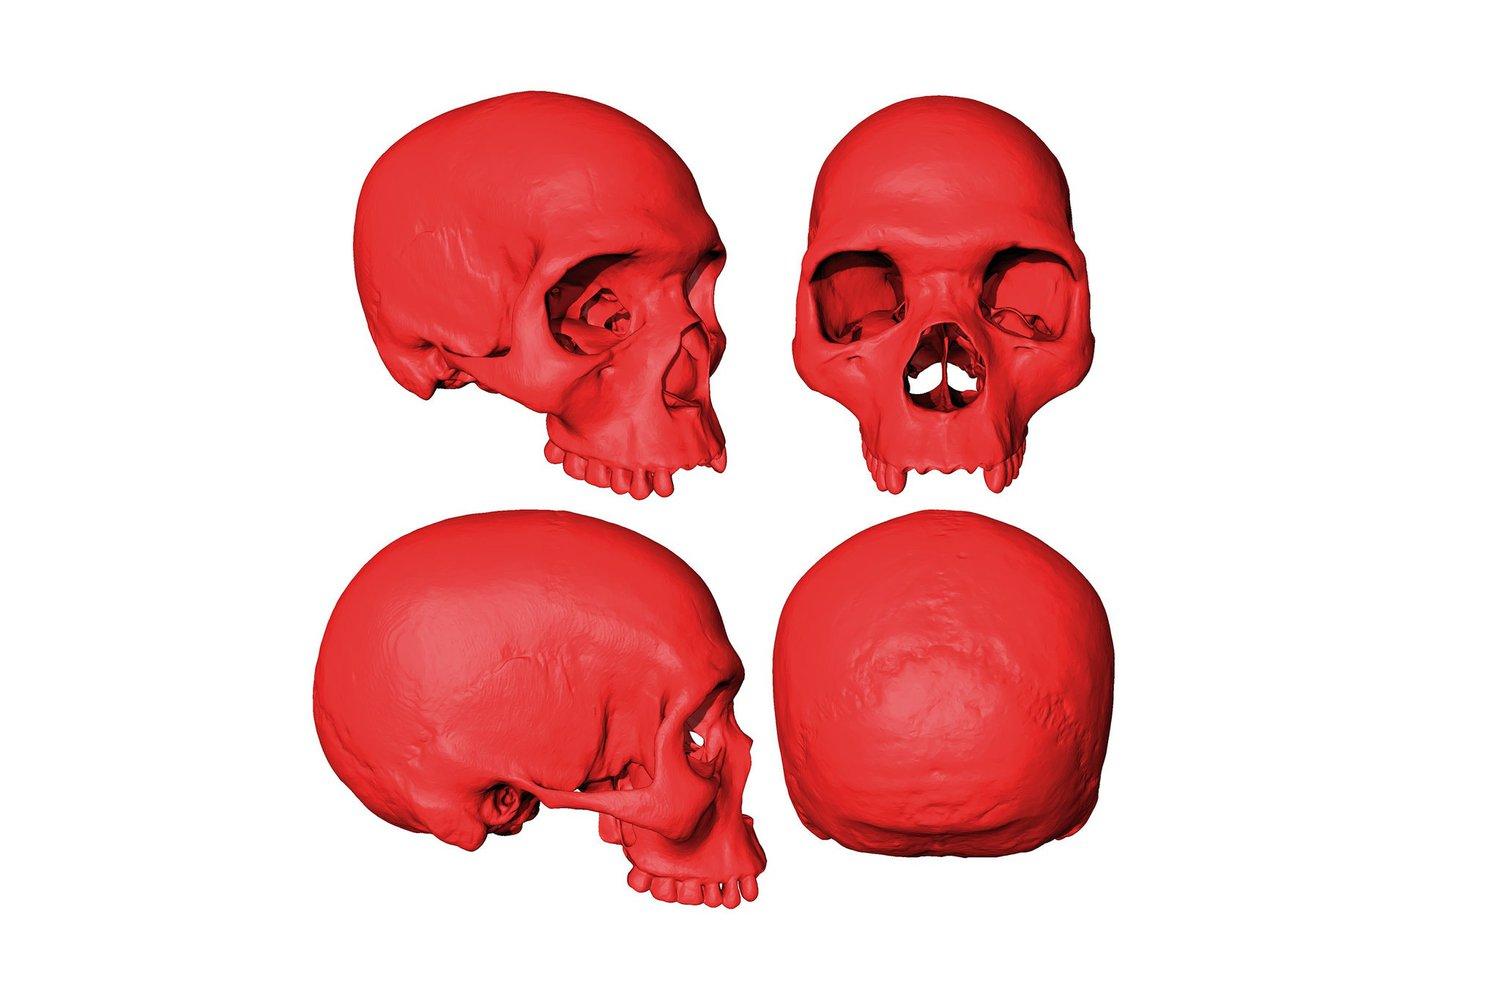 Исследователи представили виртуальный череп, принадлежащий последнему общему предку всех современных людей